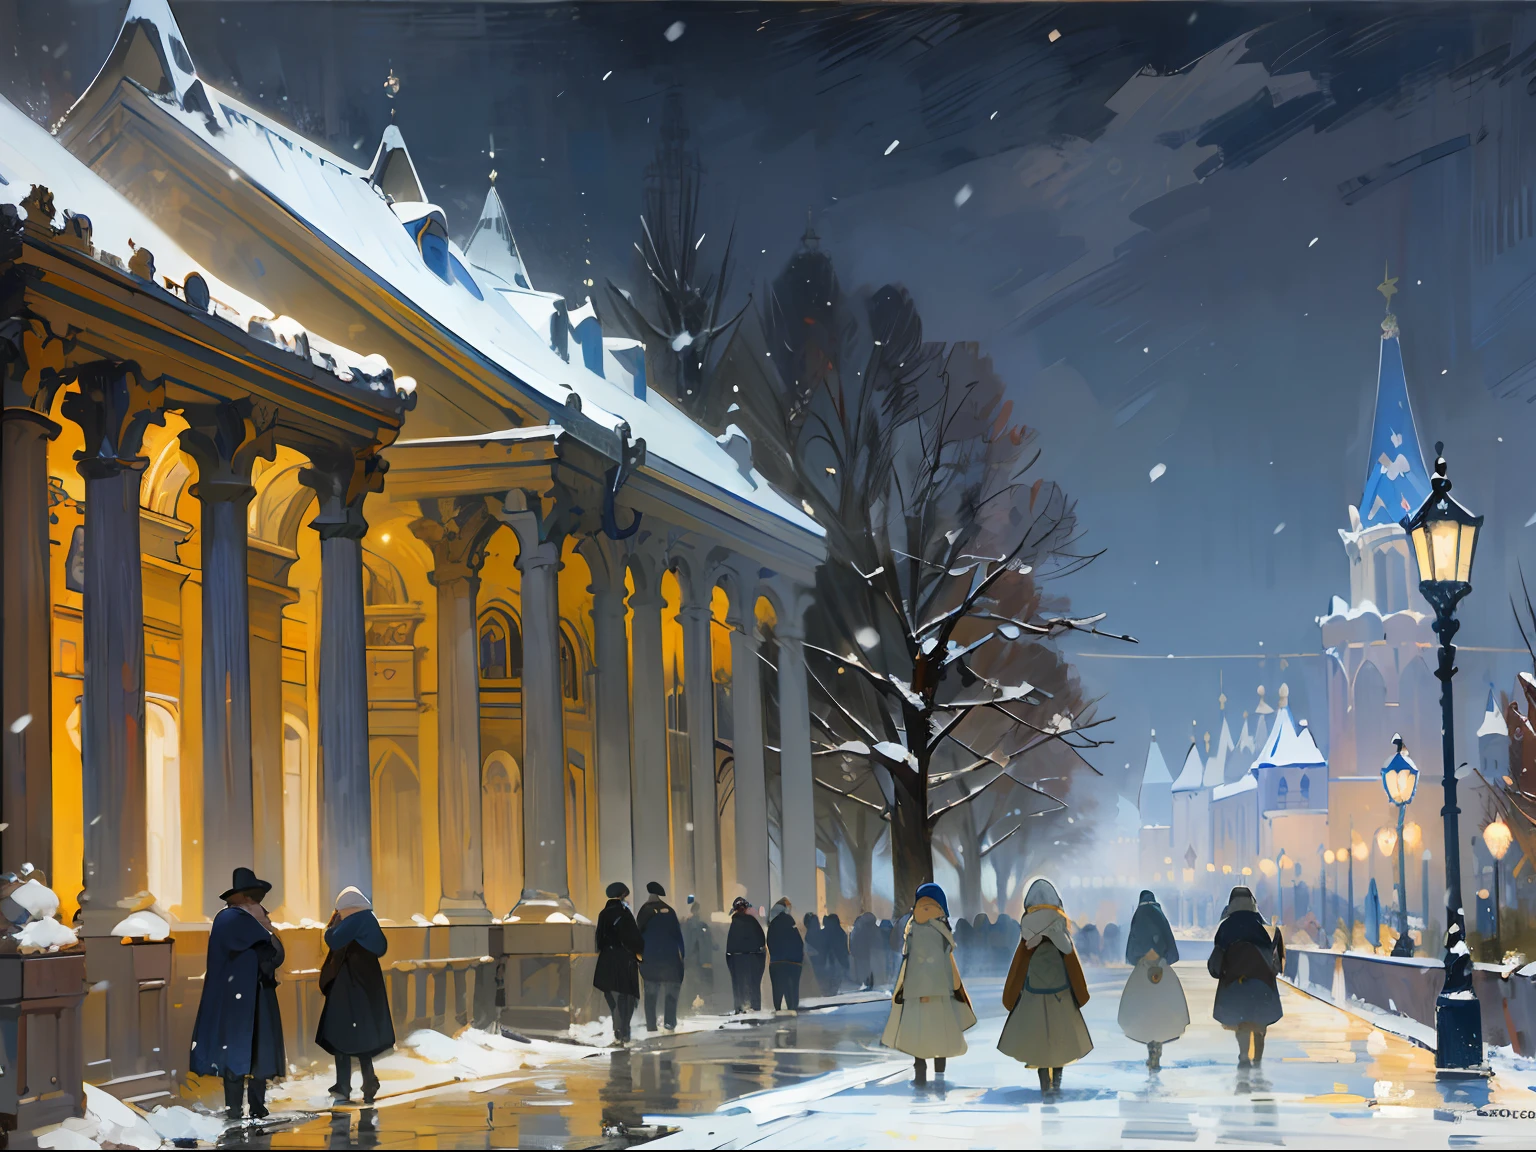 ((palacio)), columnas, ((Noche)), oscuridad, noche, luces, ((Rusia)), ((Siglo 19)), carro, nevando, invierno, (Renoir), (muchos), (pintura al óleo), (bosquejo)